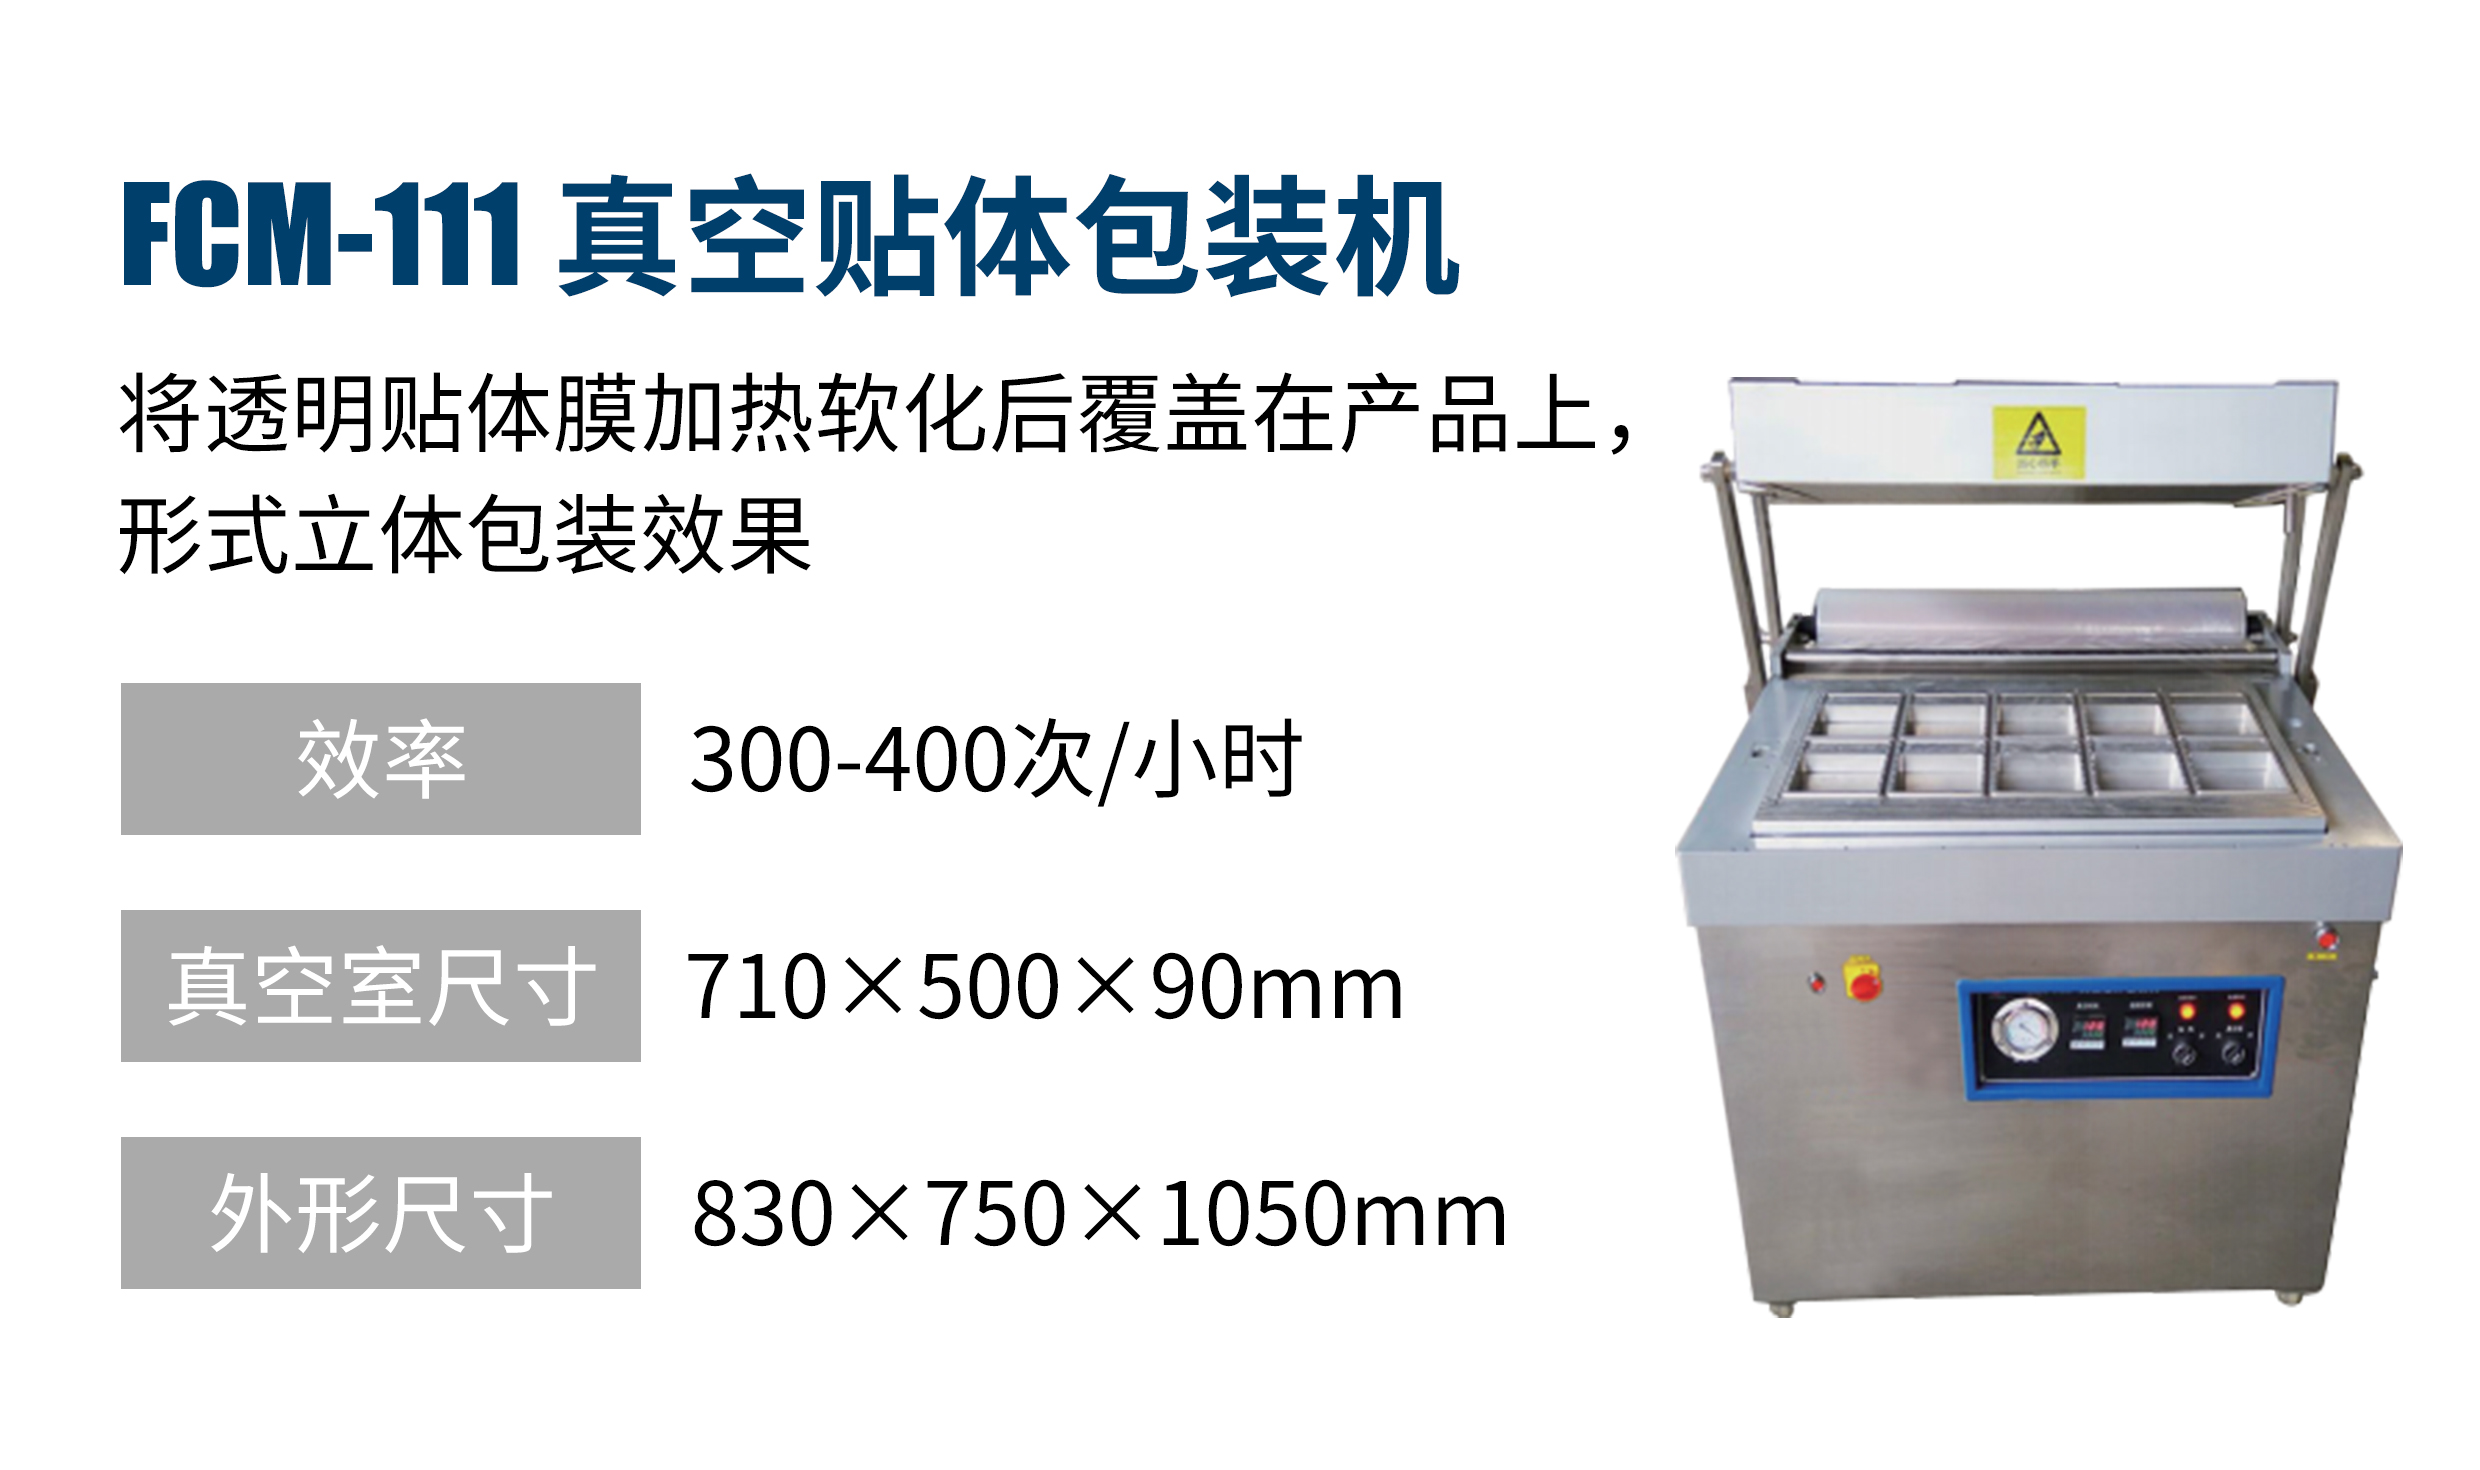 Vacuum skin packaging （VSP）machine 